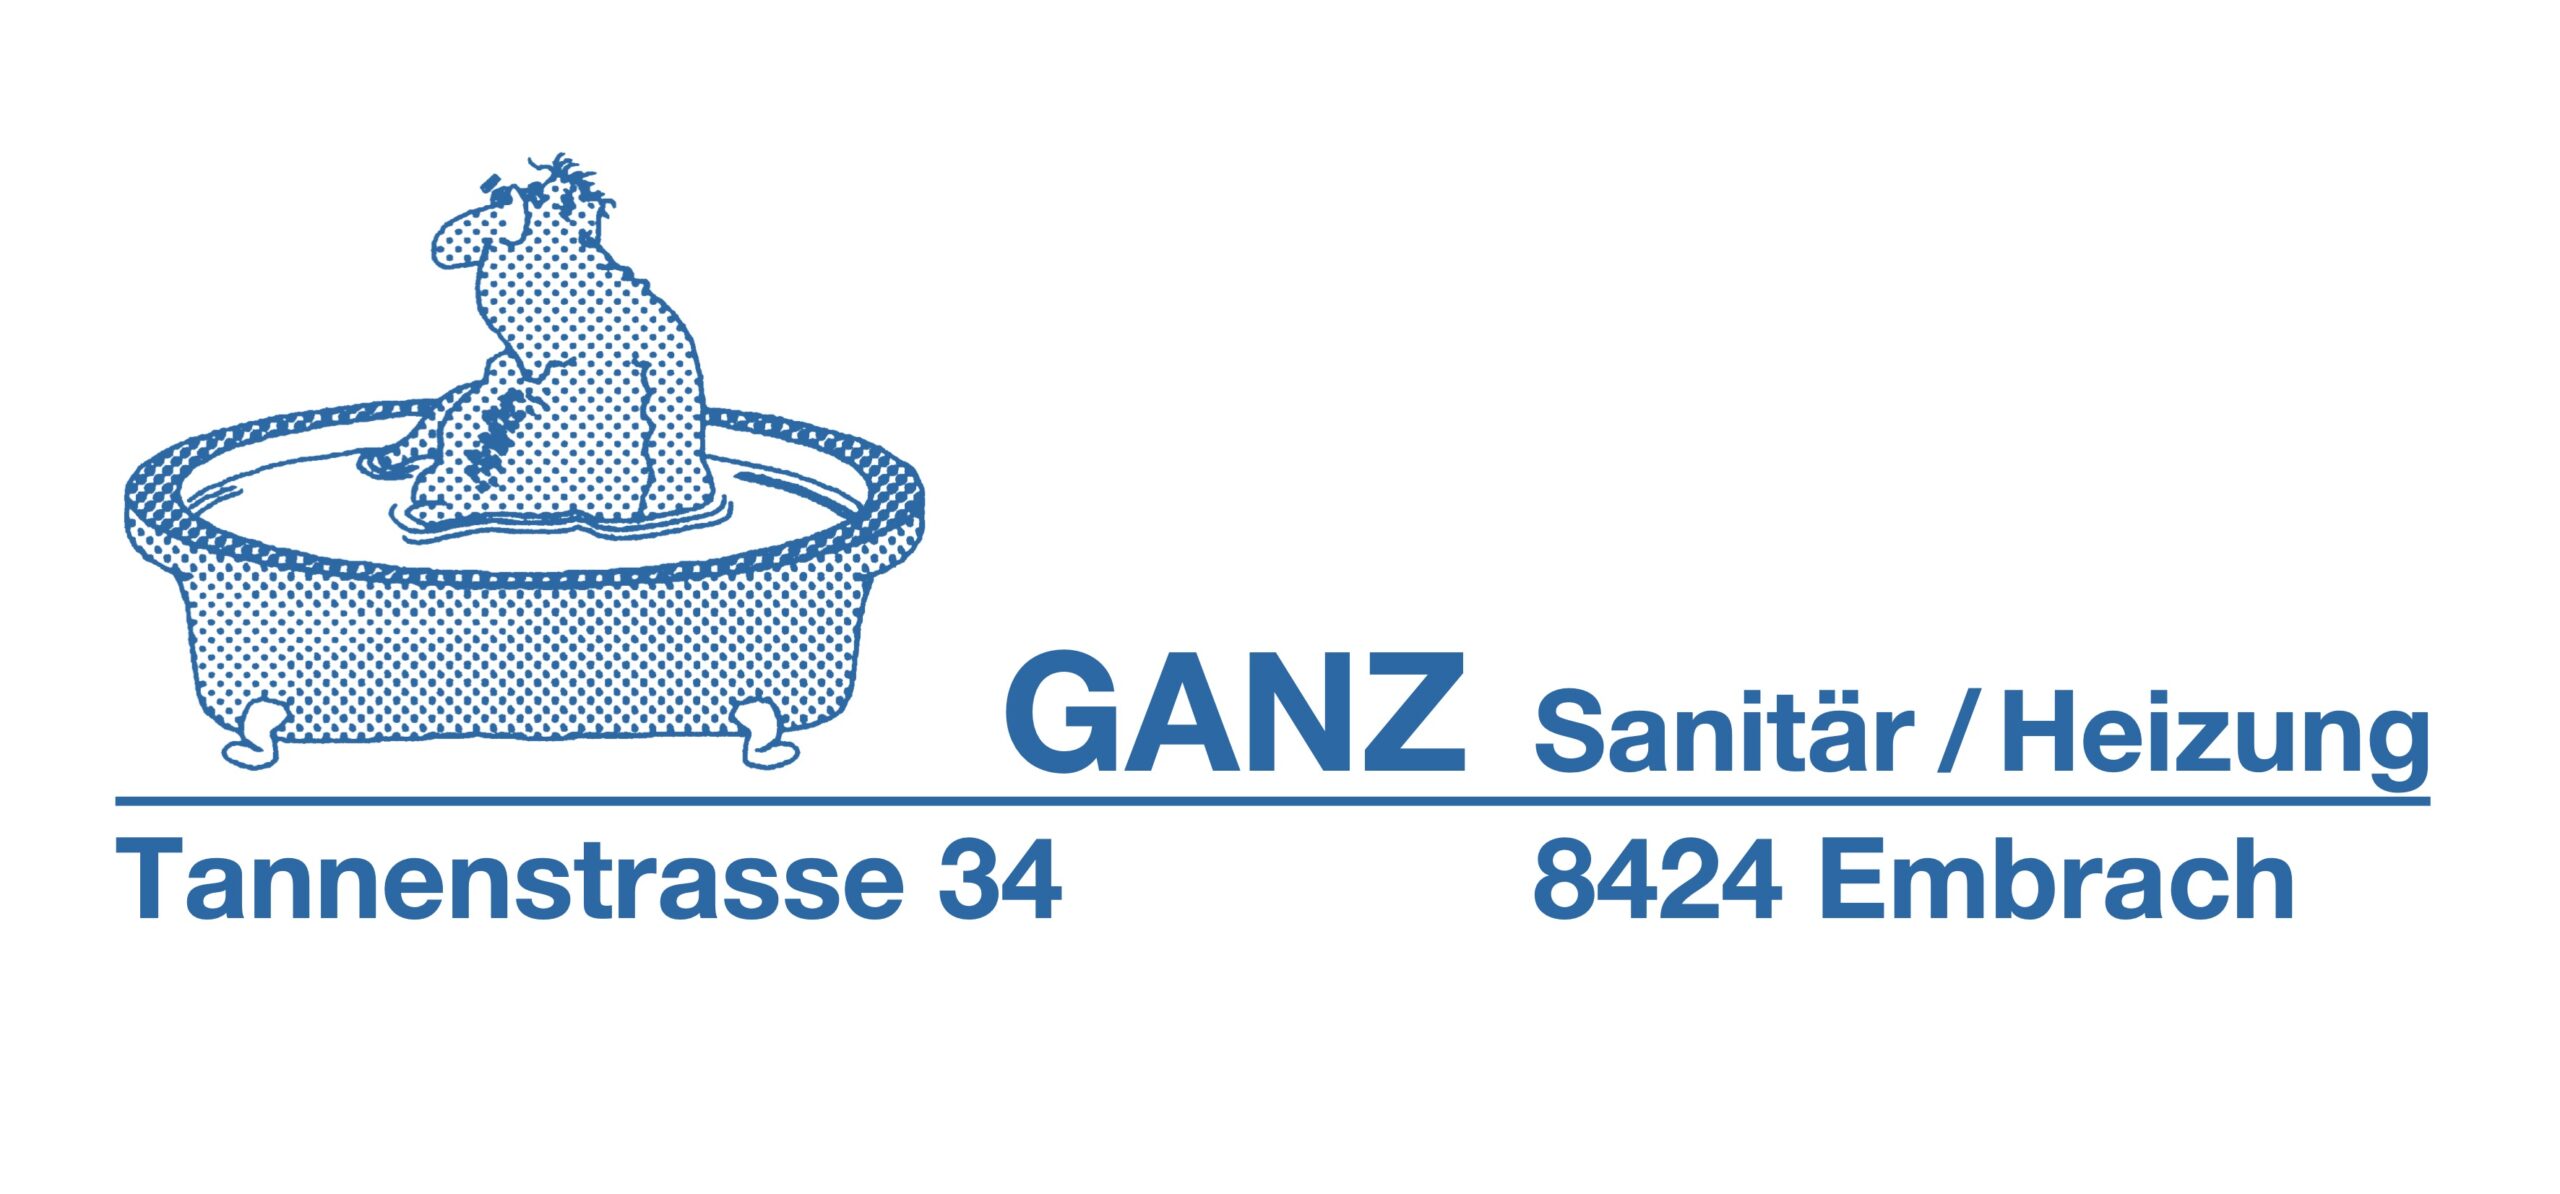 Ganz Sanitär/Heizung